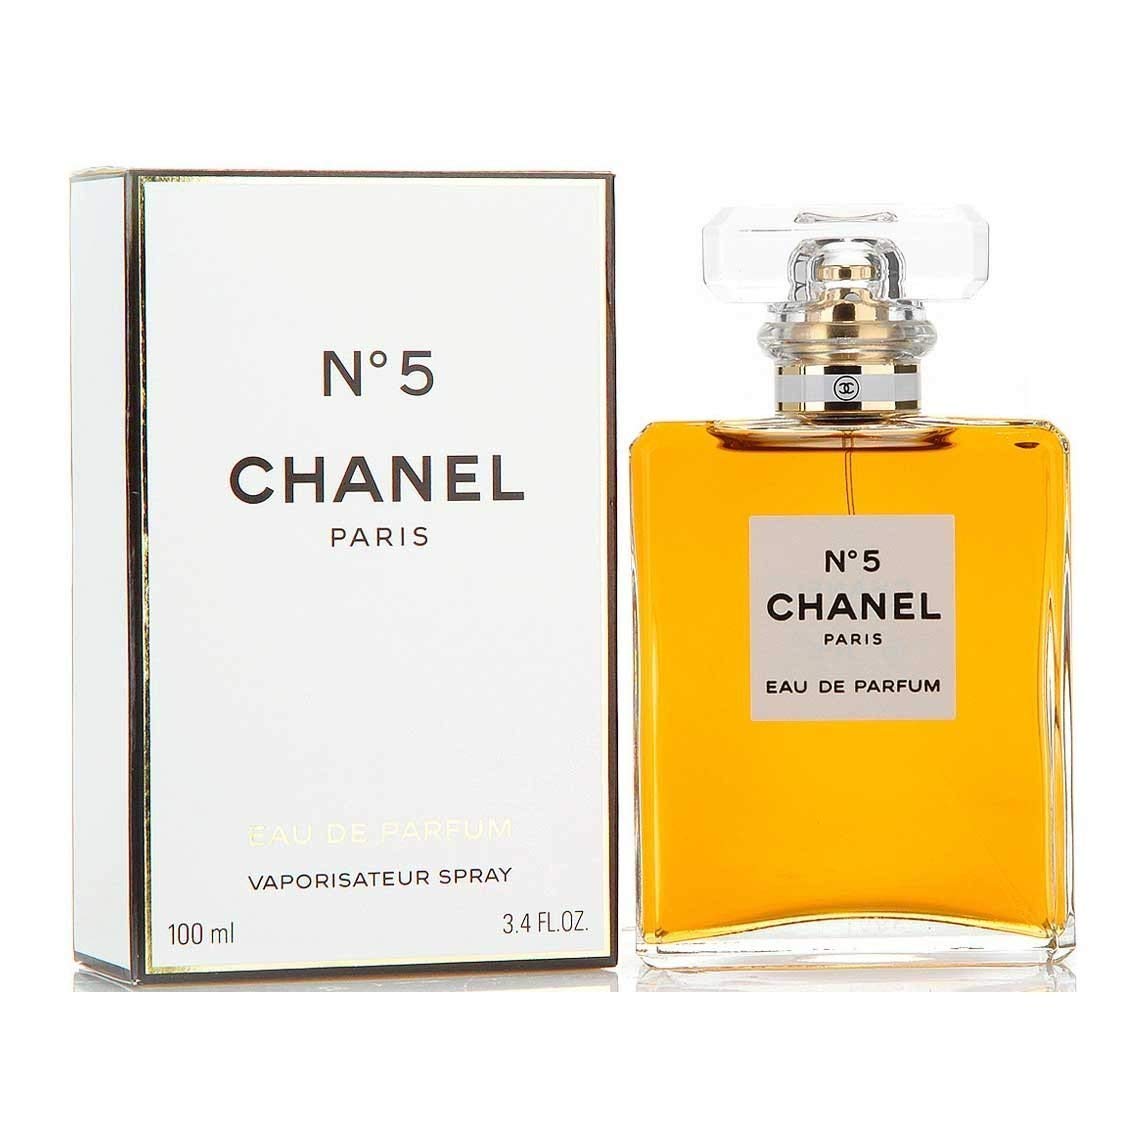 Chanel Chance Eau Tendre Eau de Parfum Chanel Chance Eau Tendre eau de  parfum fruity floral perfume